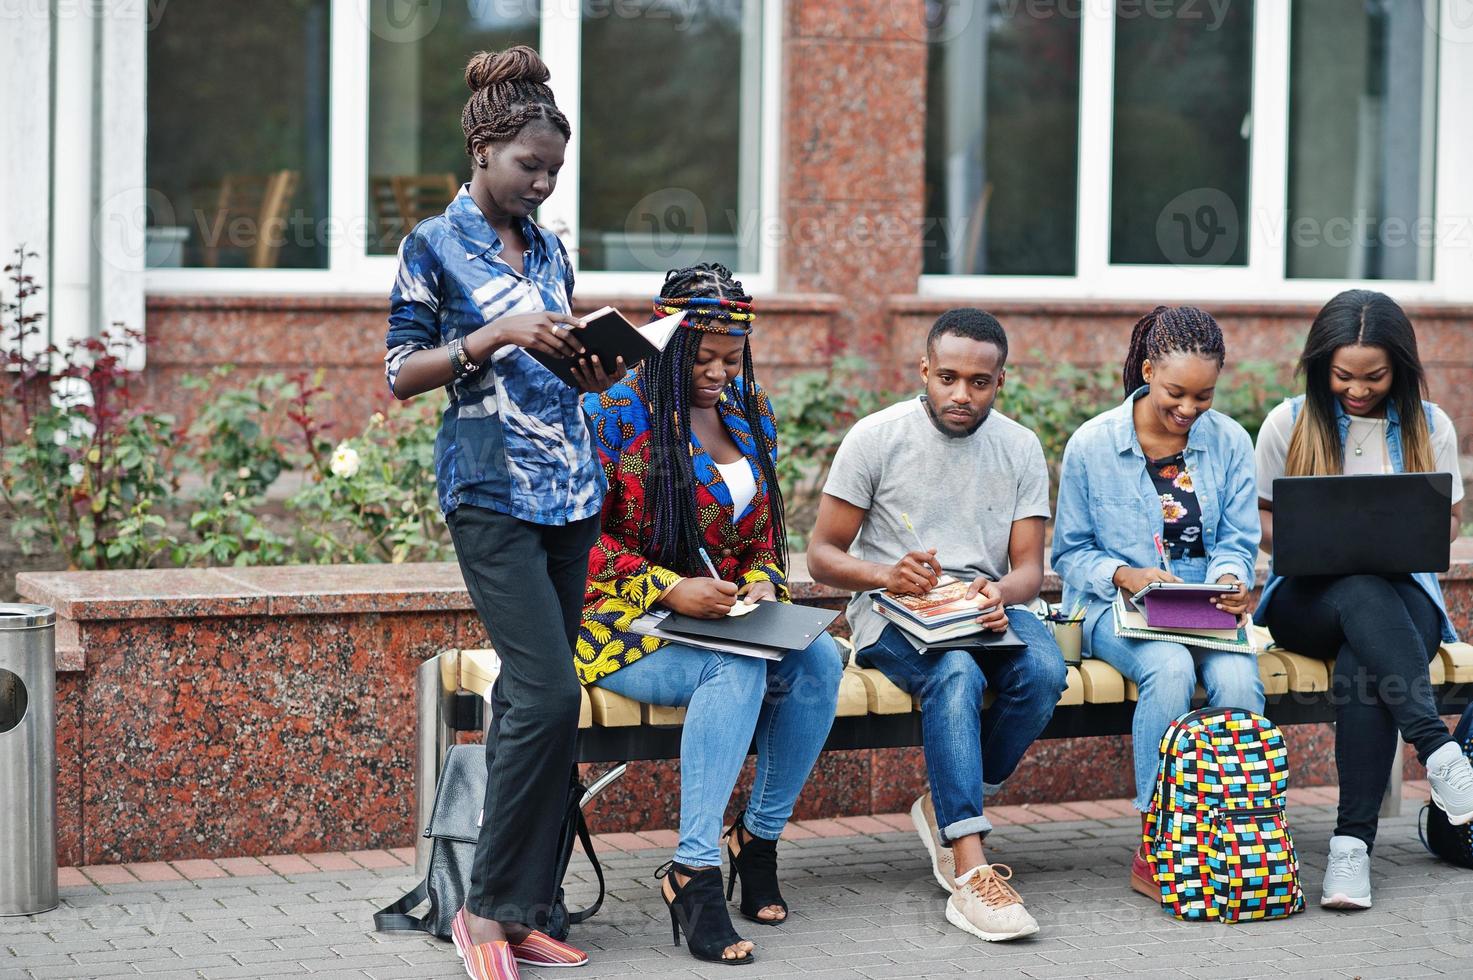 grupo de cinco estudantes universitários africanos passando tempo juntos no campus no pátio da universidade. amigos afro negros estudando no banco com itens escolares, notebooks laptops. foto